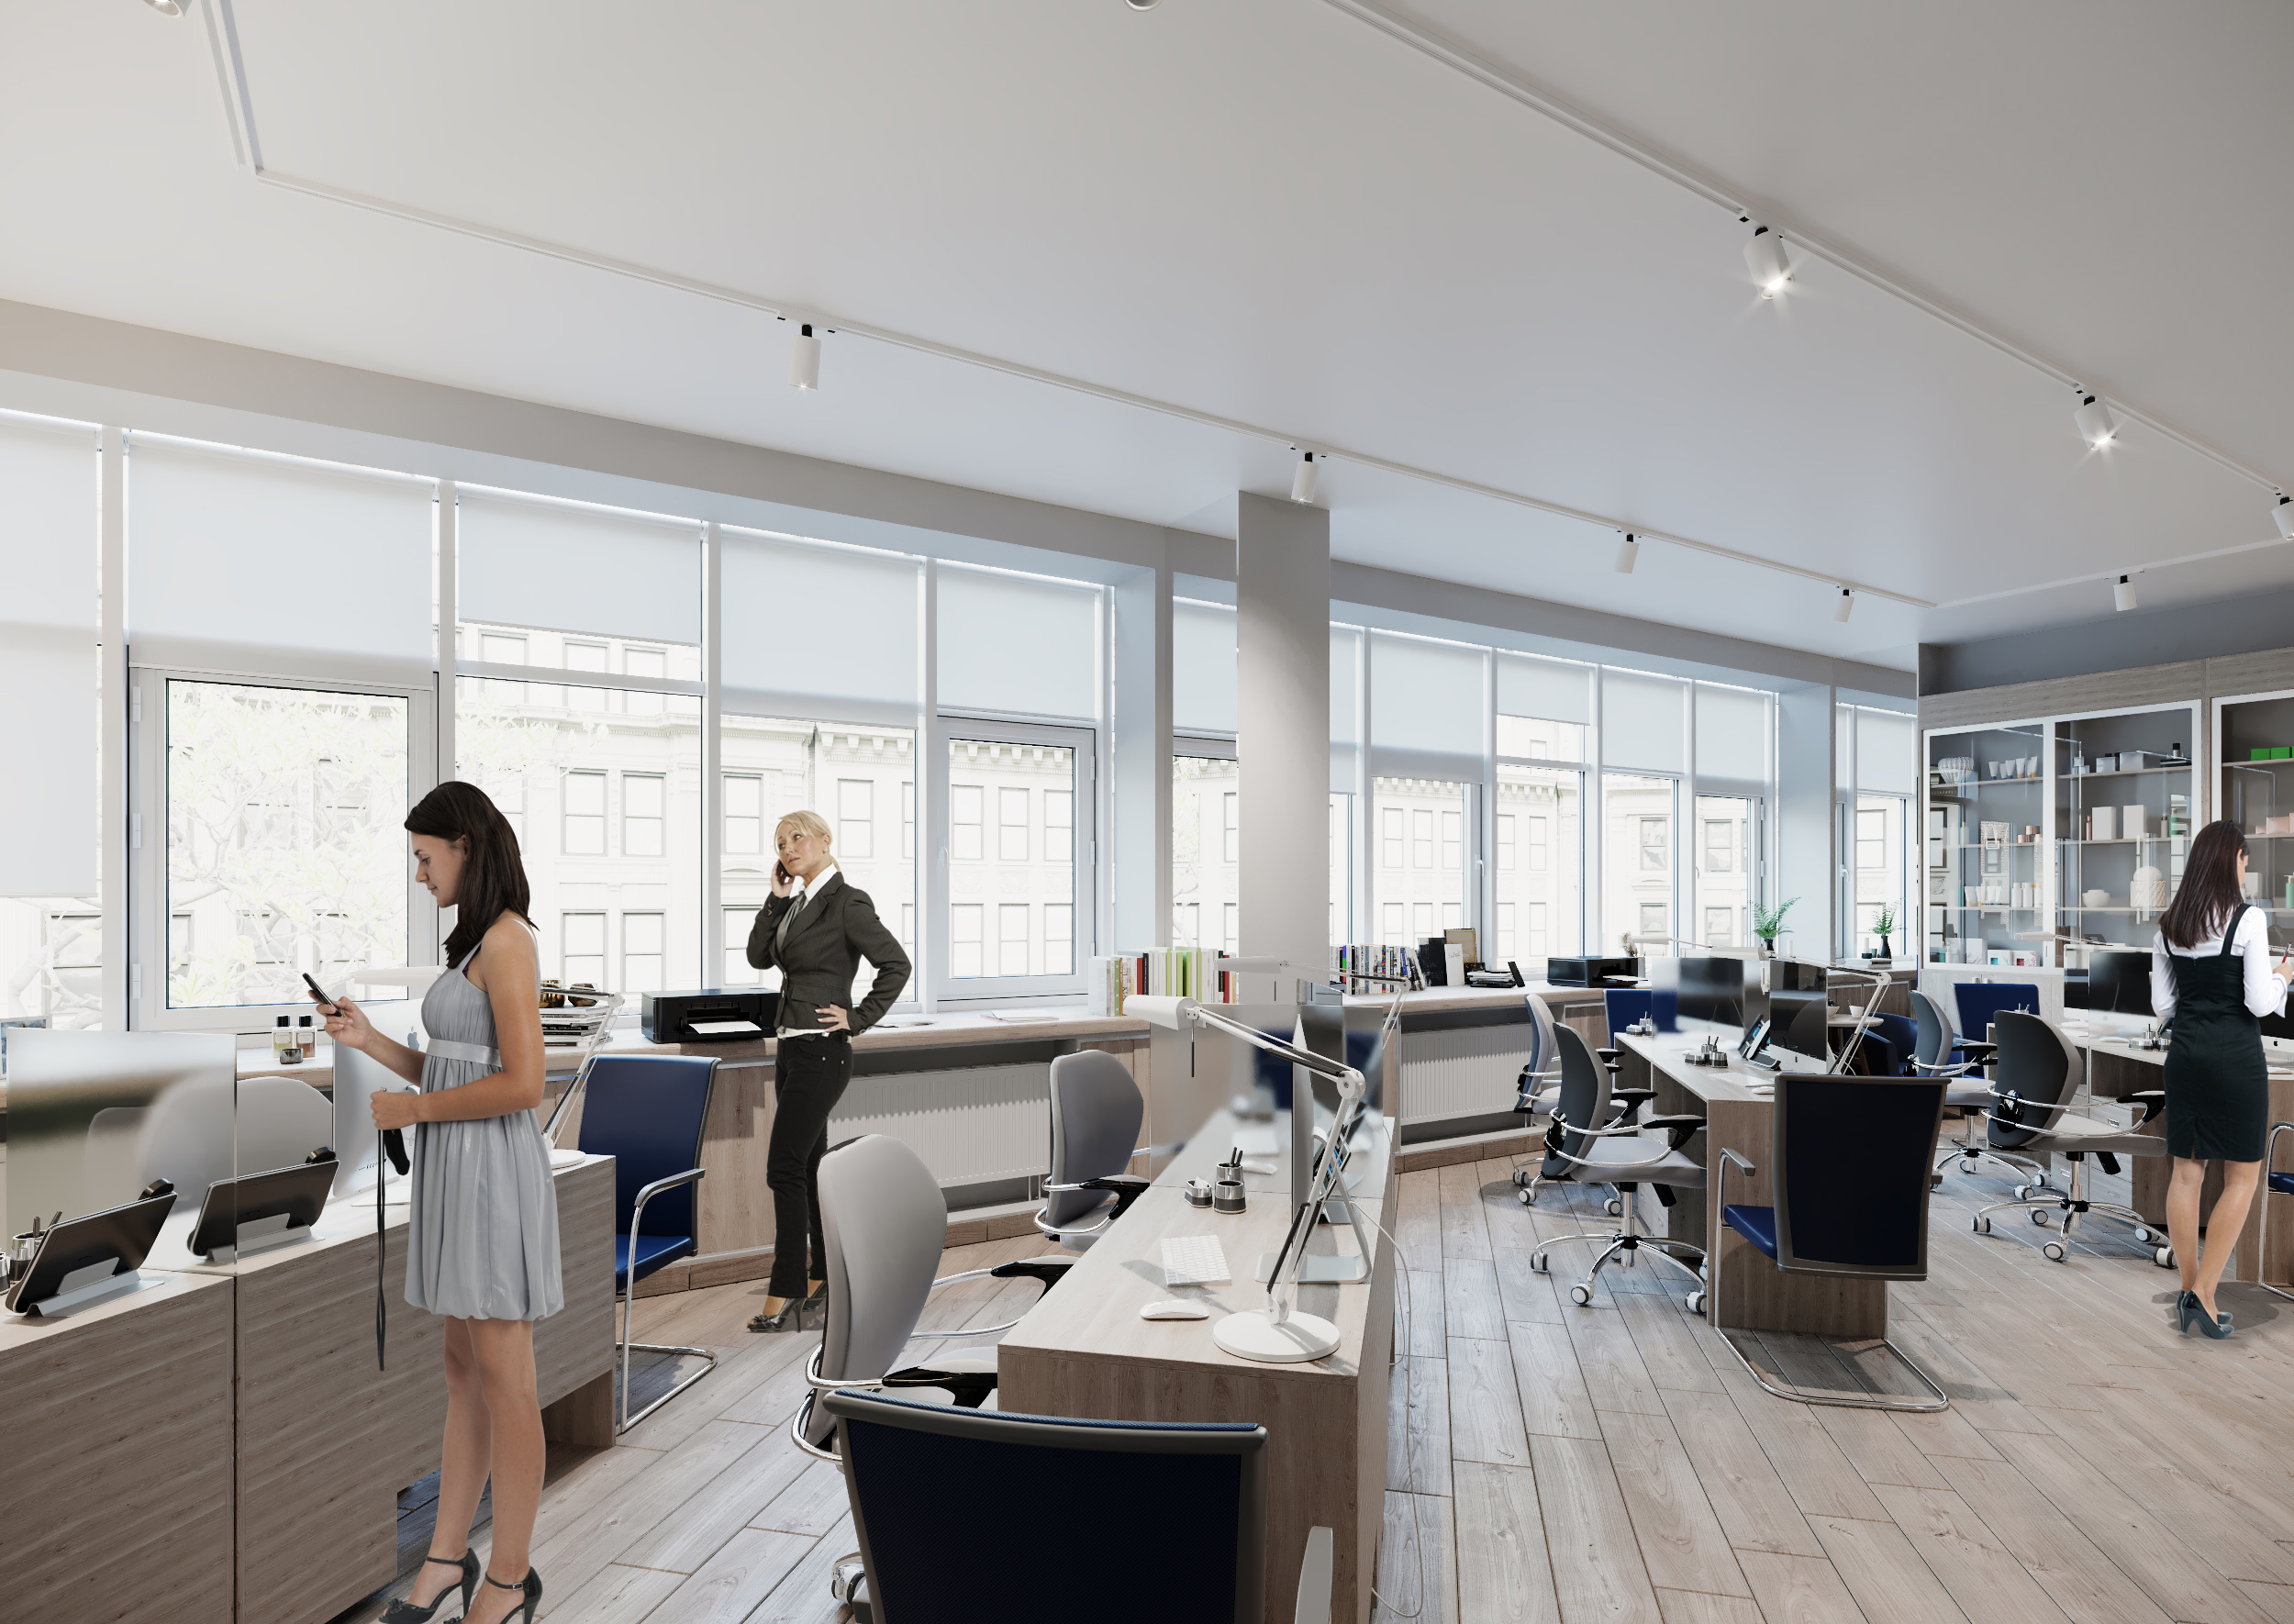 Archvis 3D moderno do escritório em 3d max corona render imagem